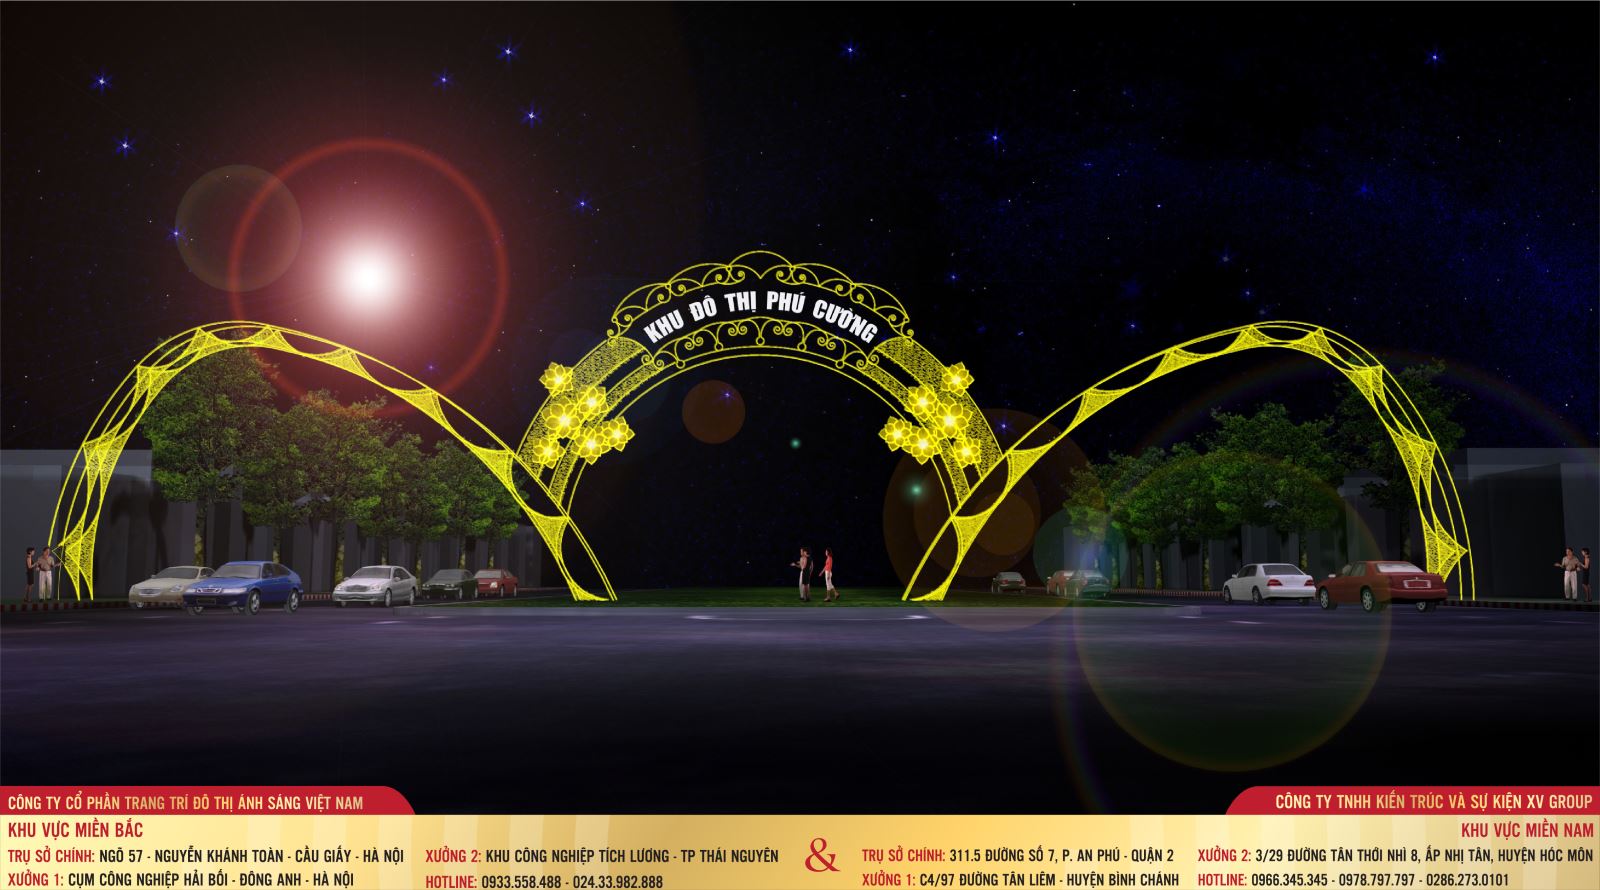 Thiết kế cổng chào Đường 30 tháng 4 chào năm mới 2017 tại khu đô thị Phú Cường